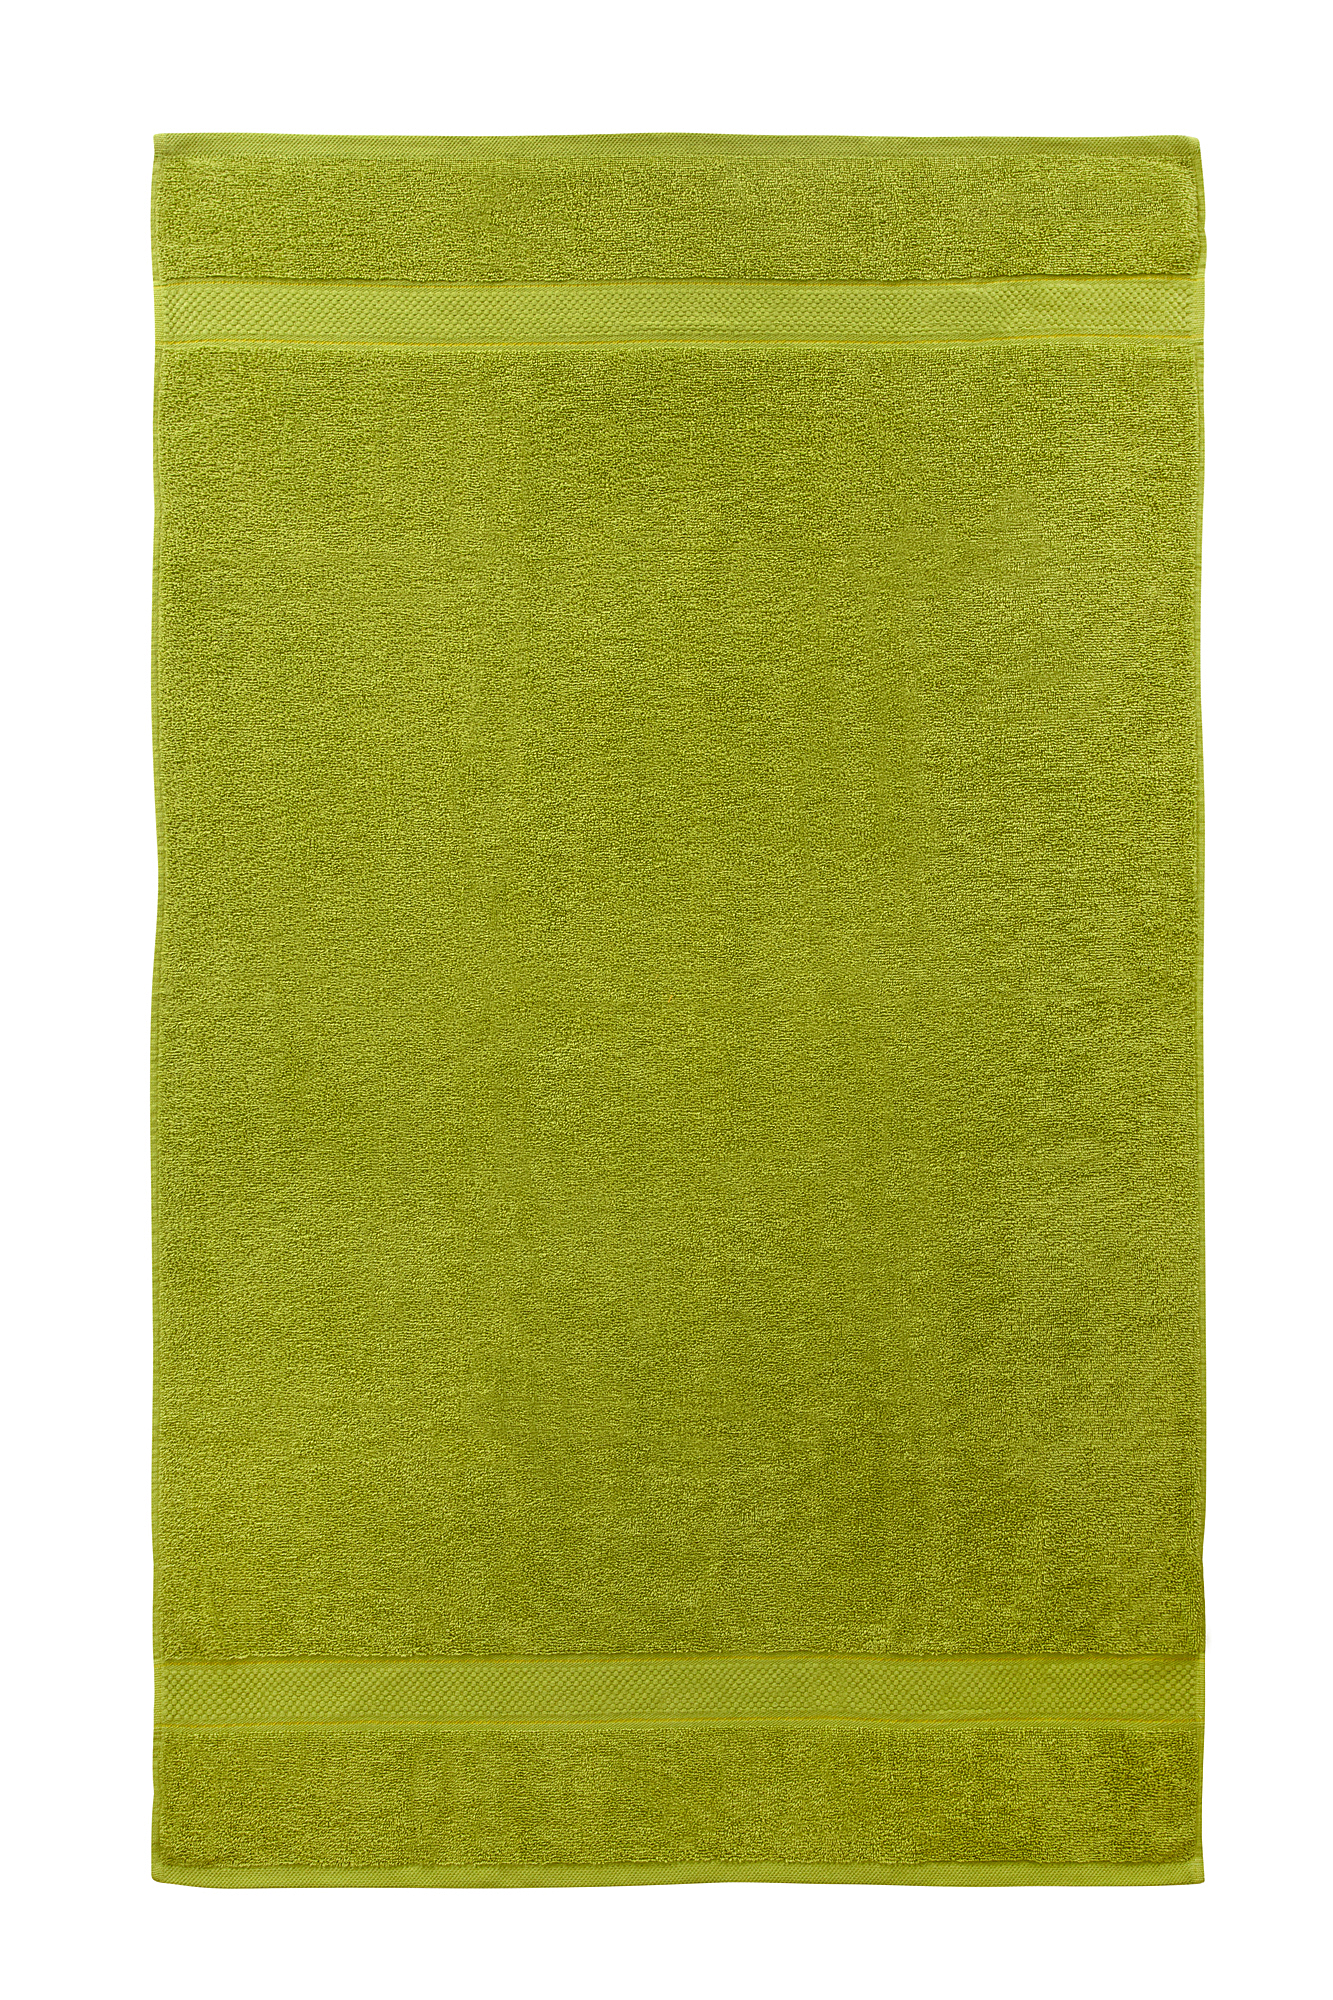 2 Pcs 100 % Cotton Premium Bath Sheet Towel Bale Set Olive Plain